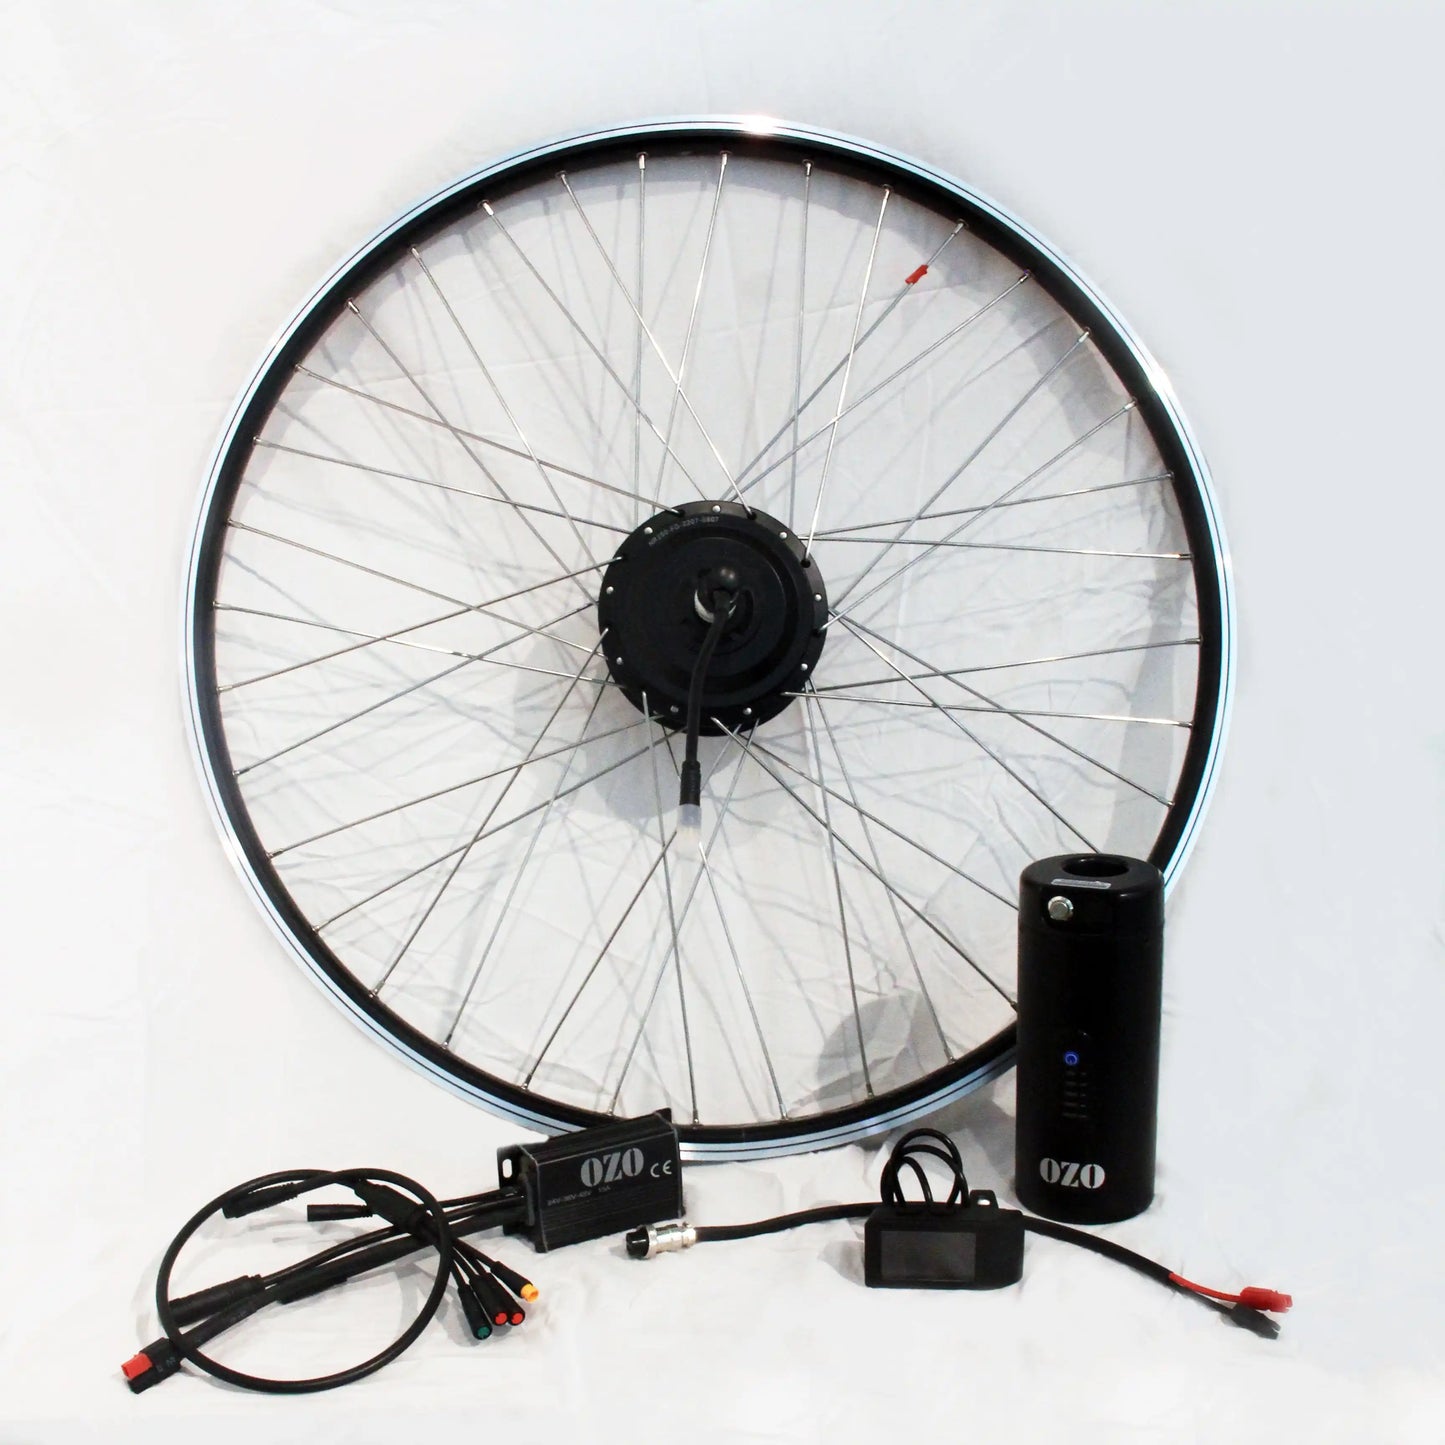 Kit de electrificación para bici plegable: motor en la rueda y batería